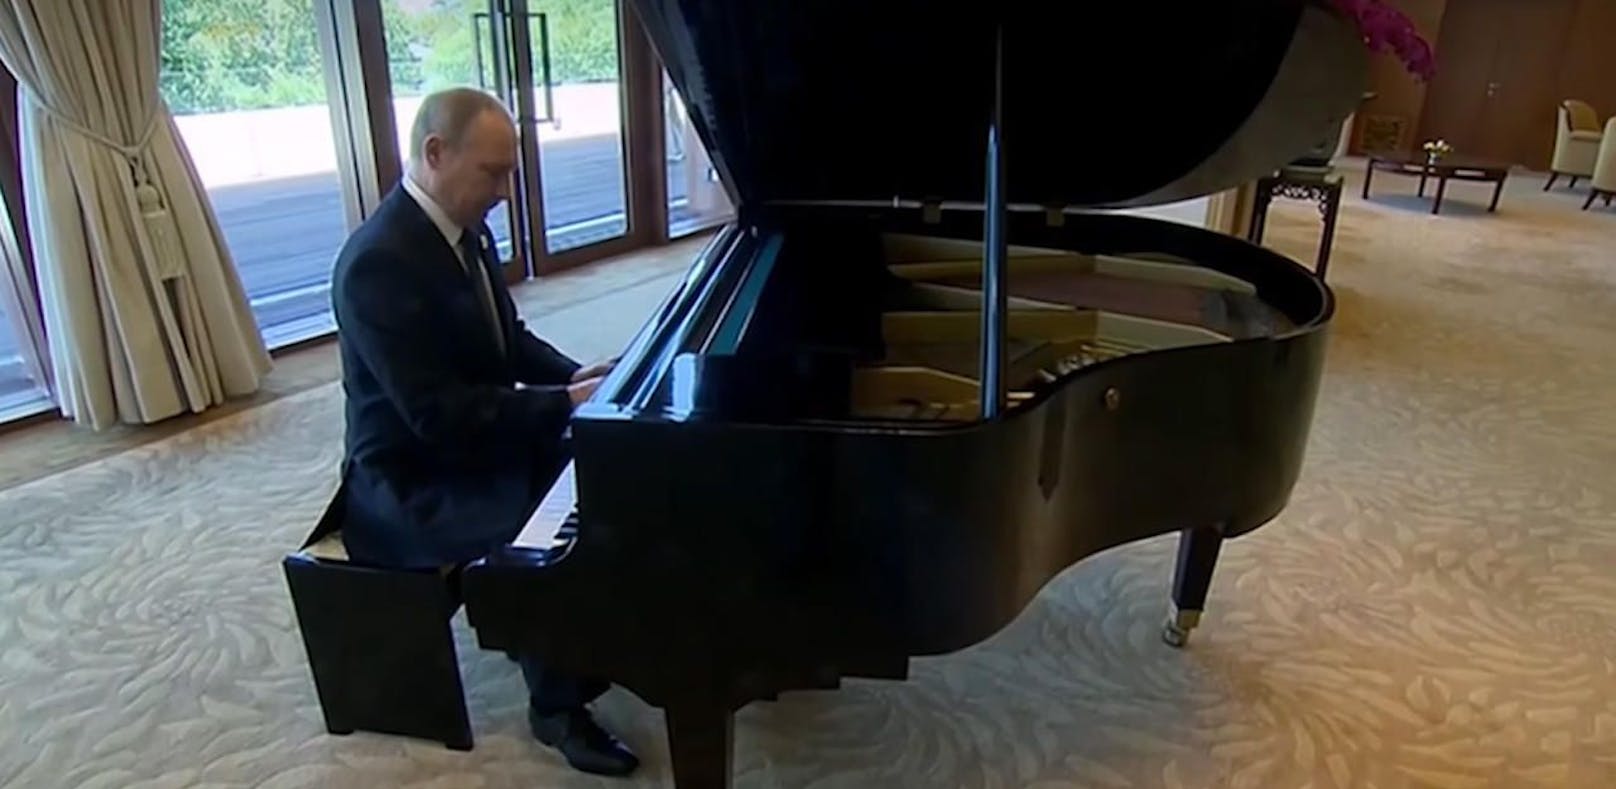 Hier spielt Putin Klavier